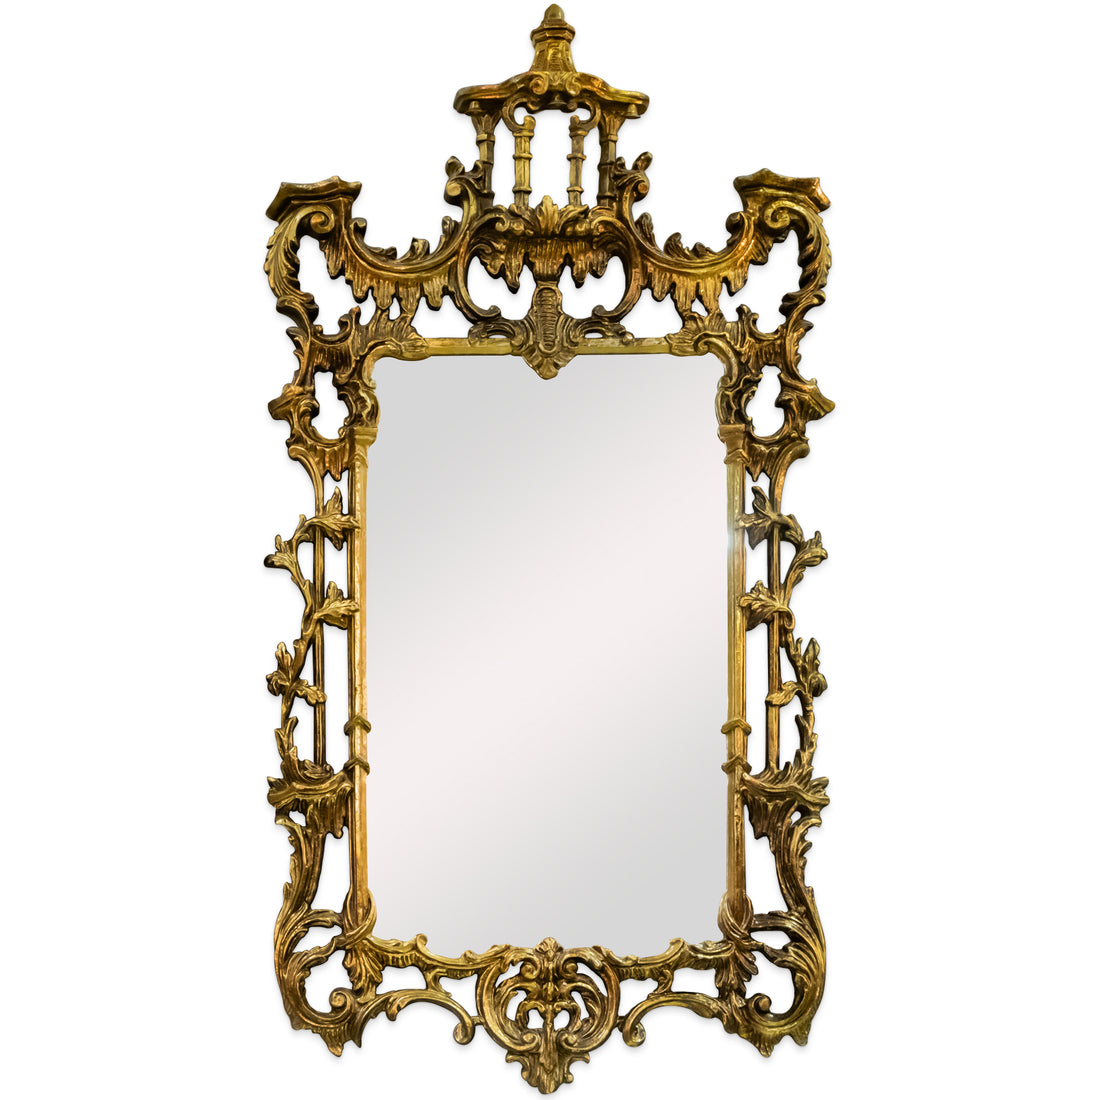 Gold Finish Ornate Decor Mirror